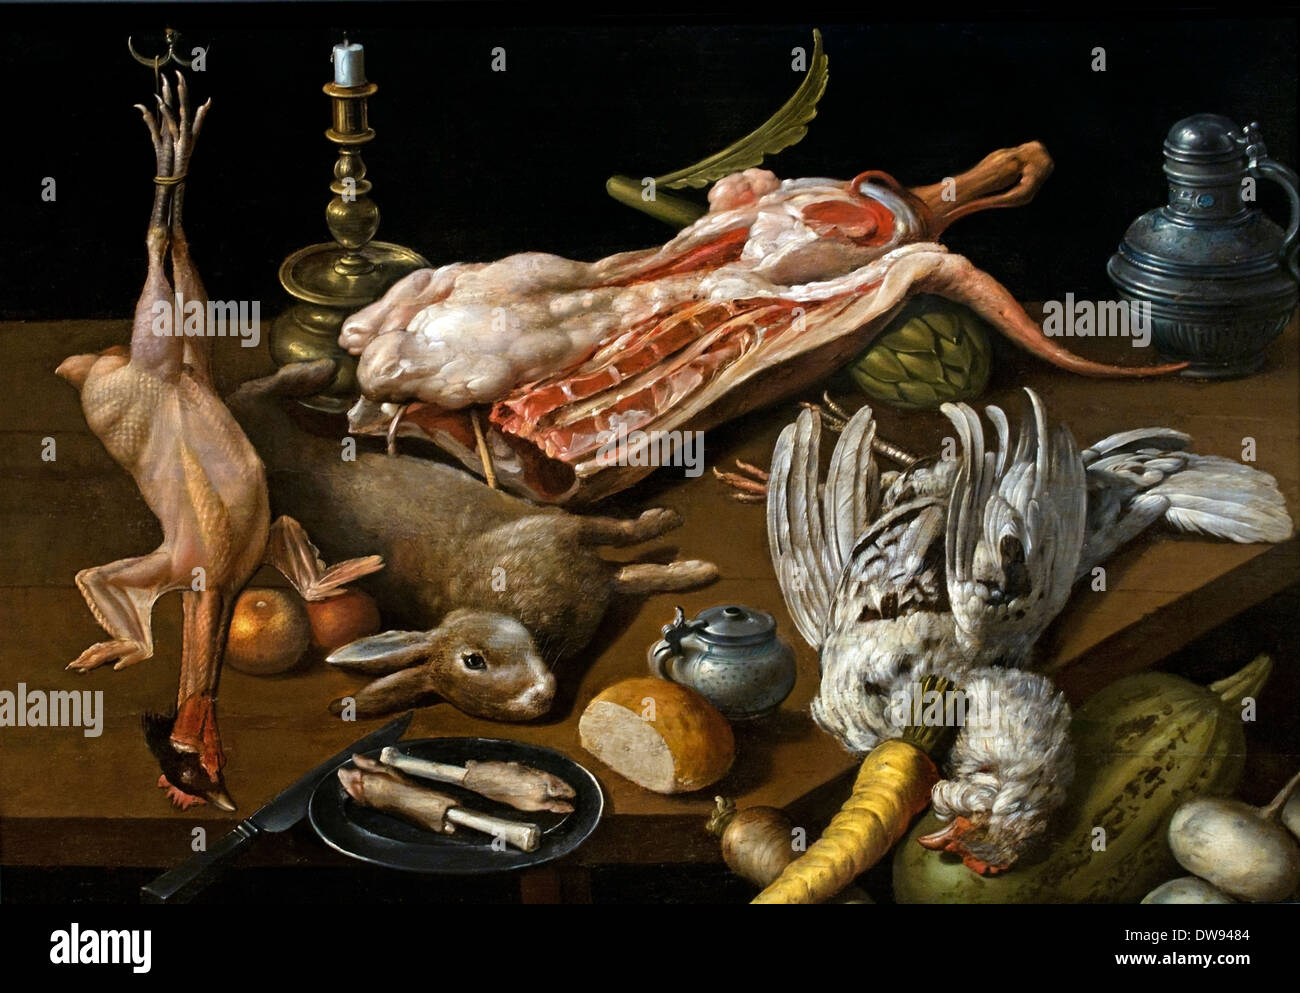 Nature morte de victuailles - still life with food par Jan willemsz van der Wilde Néerlandais Pays-Bas 1586-1636 Banque D'Images